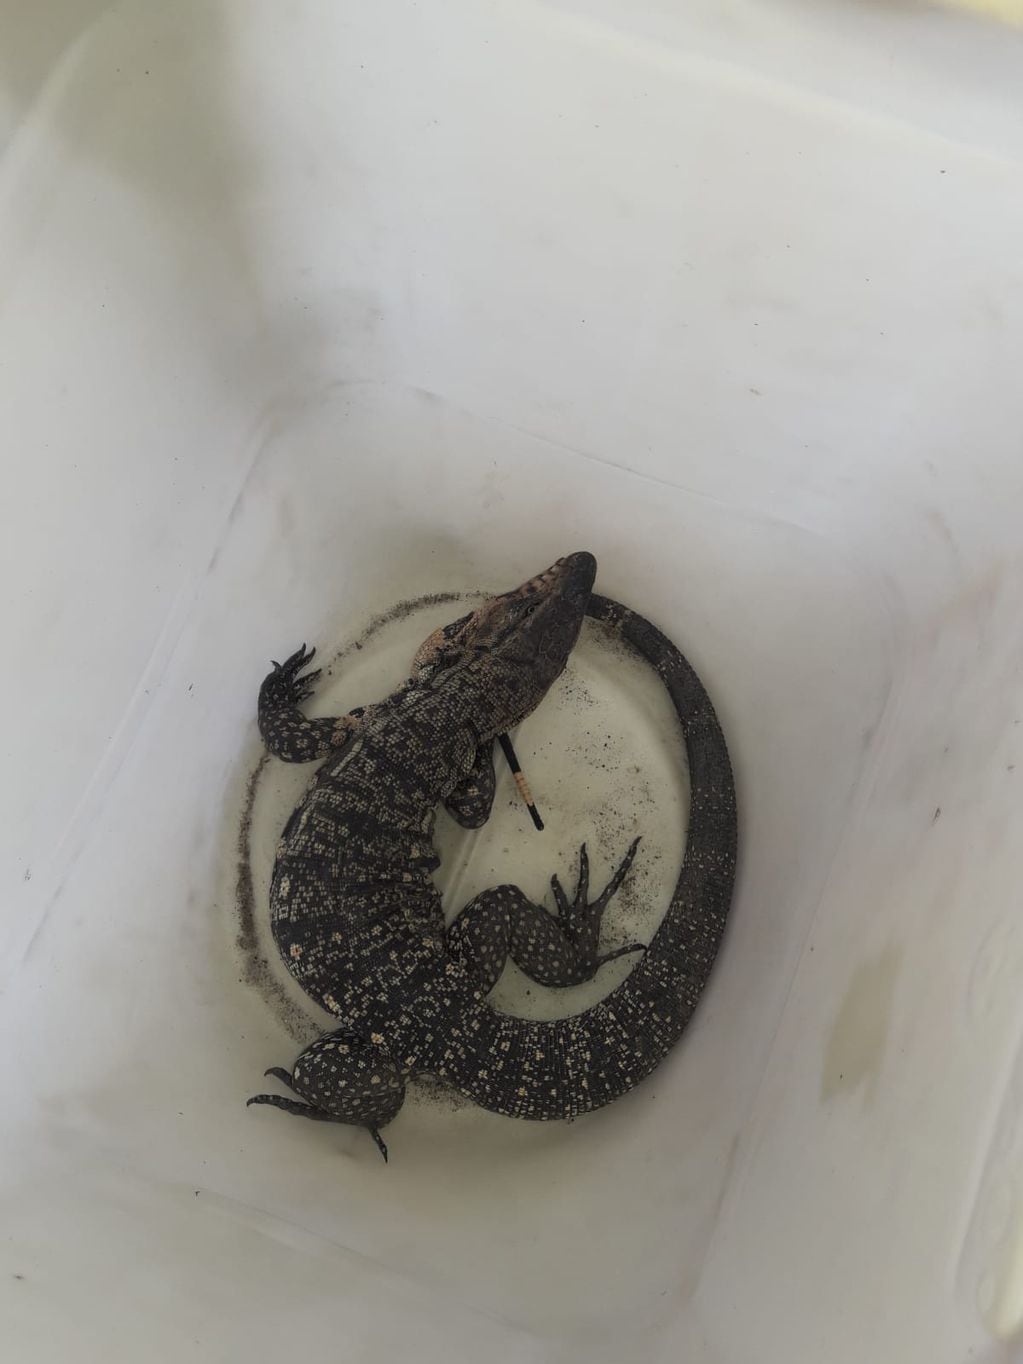 Otro lagarto fue recuperado de un domicilio en barrio Parque Ituzaingó.